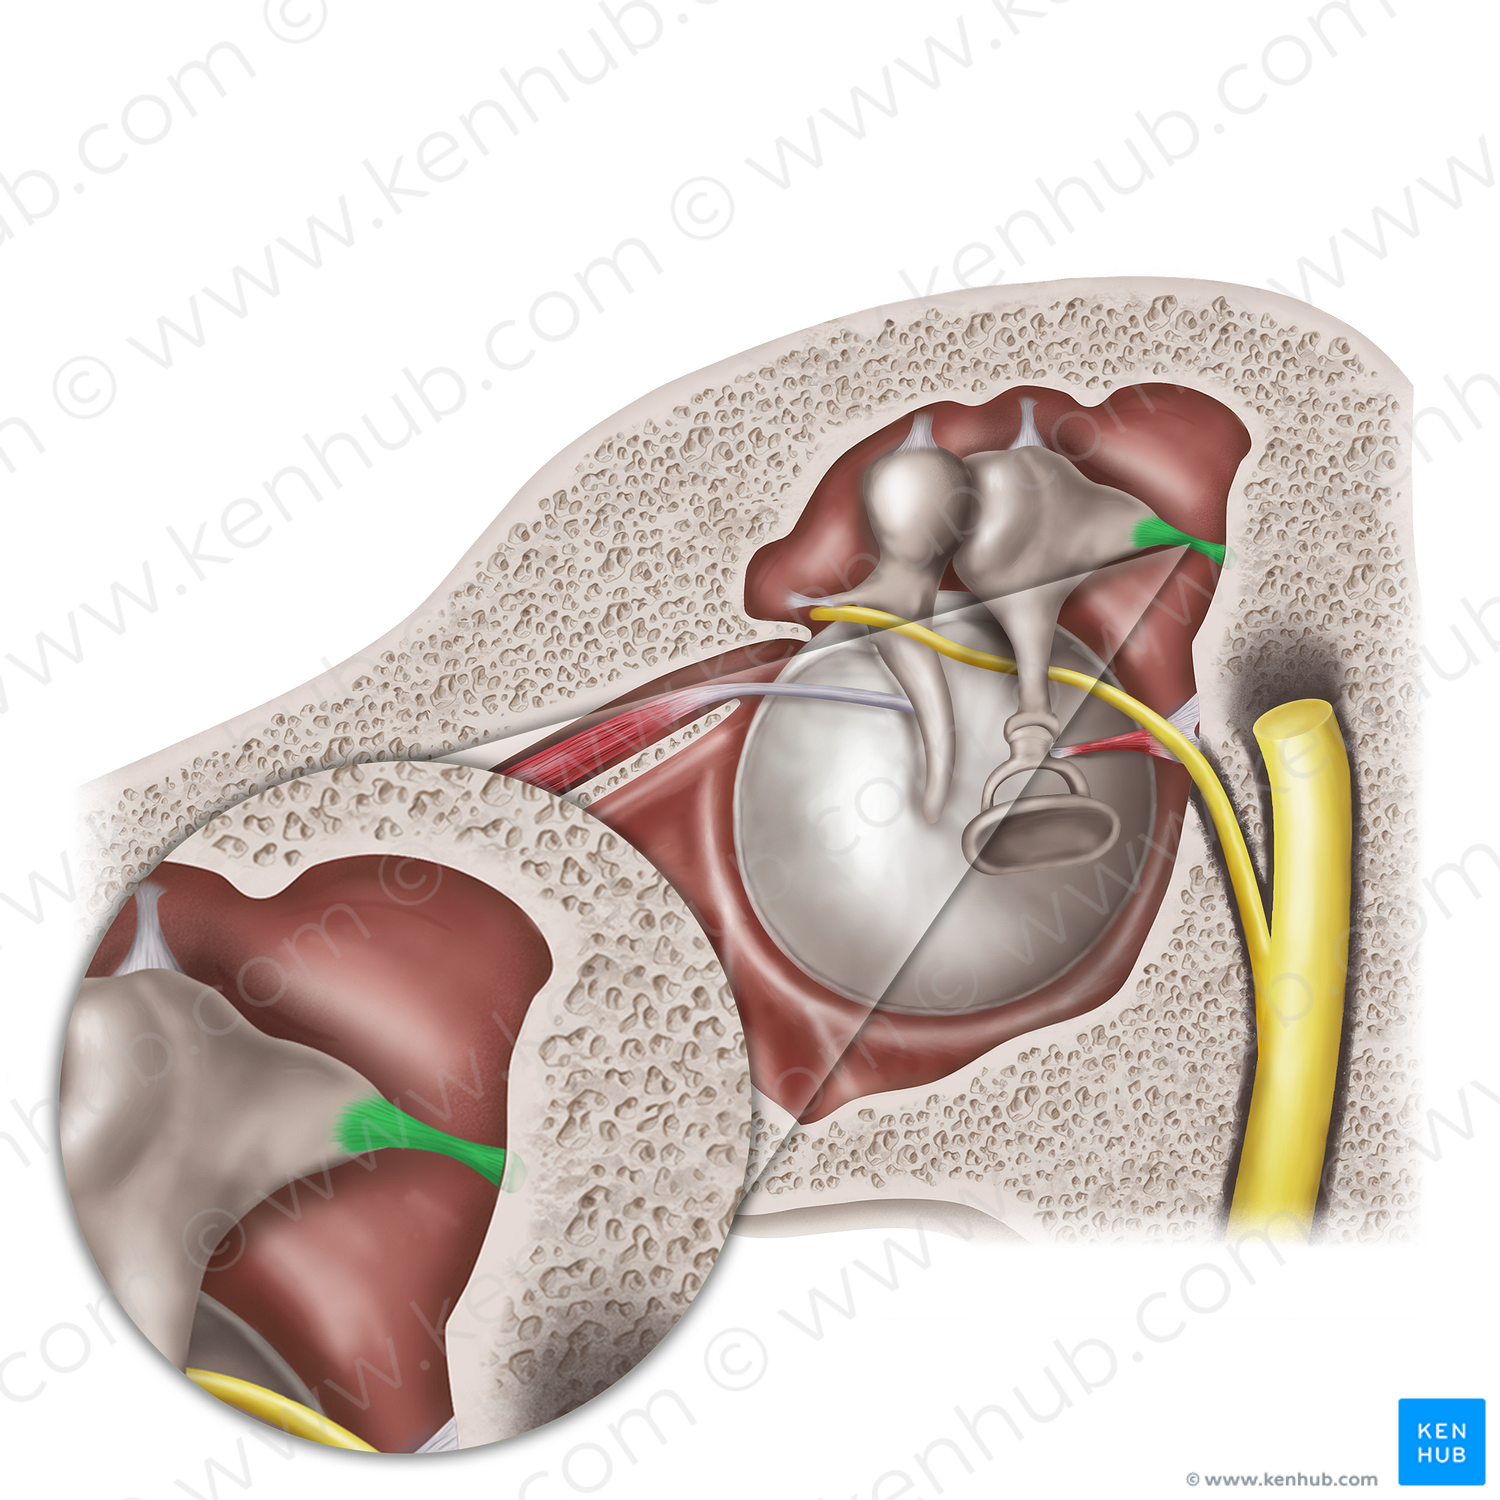 Posterior ligament of incus (#20570)